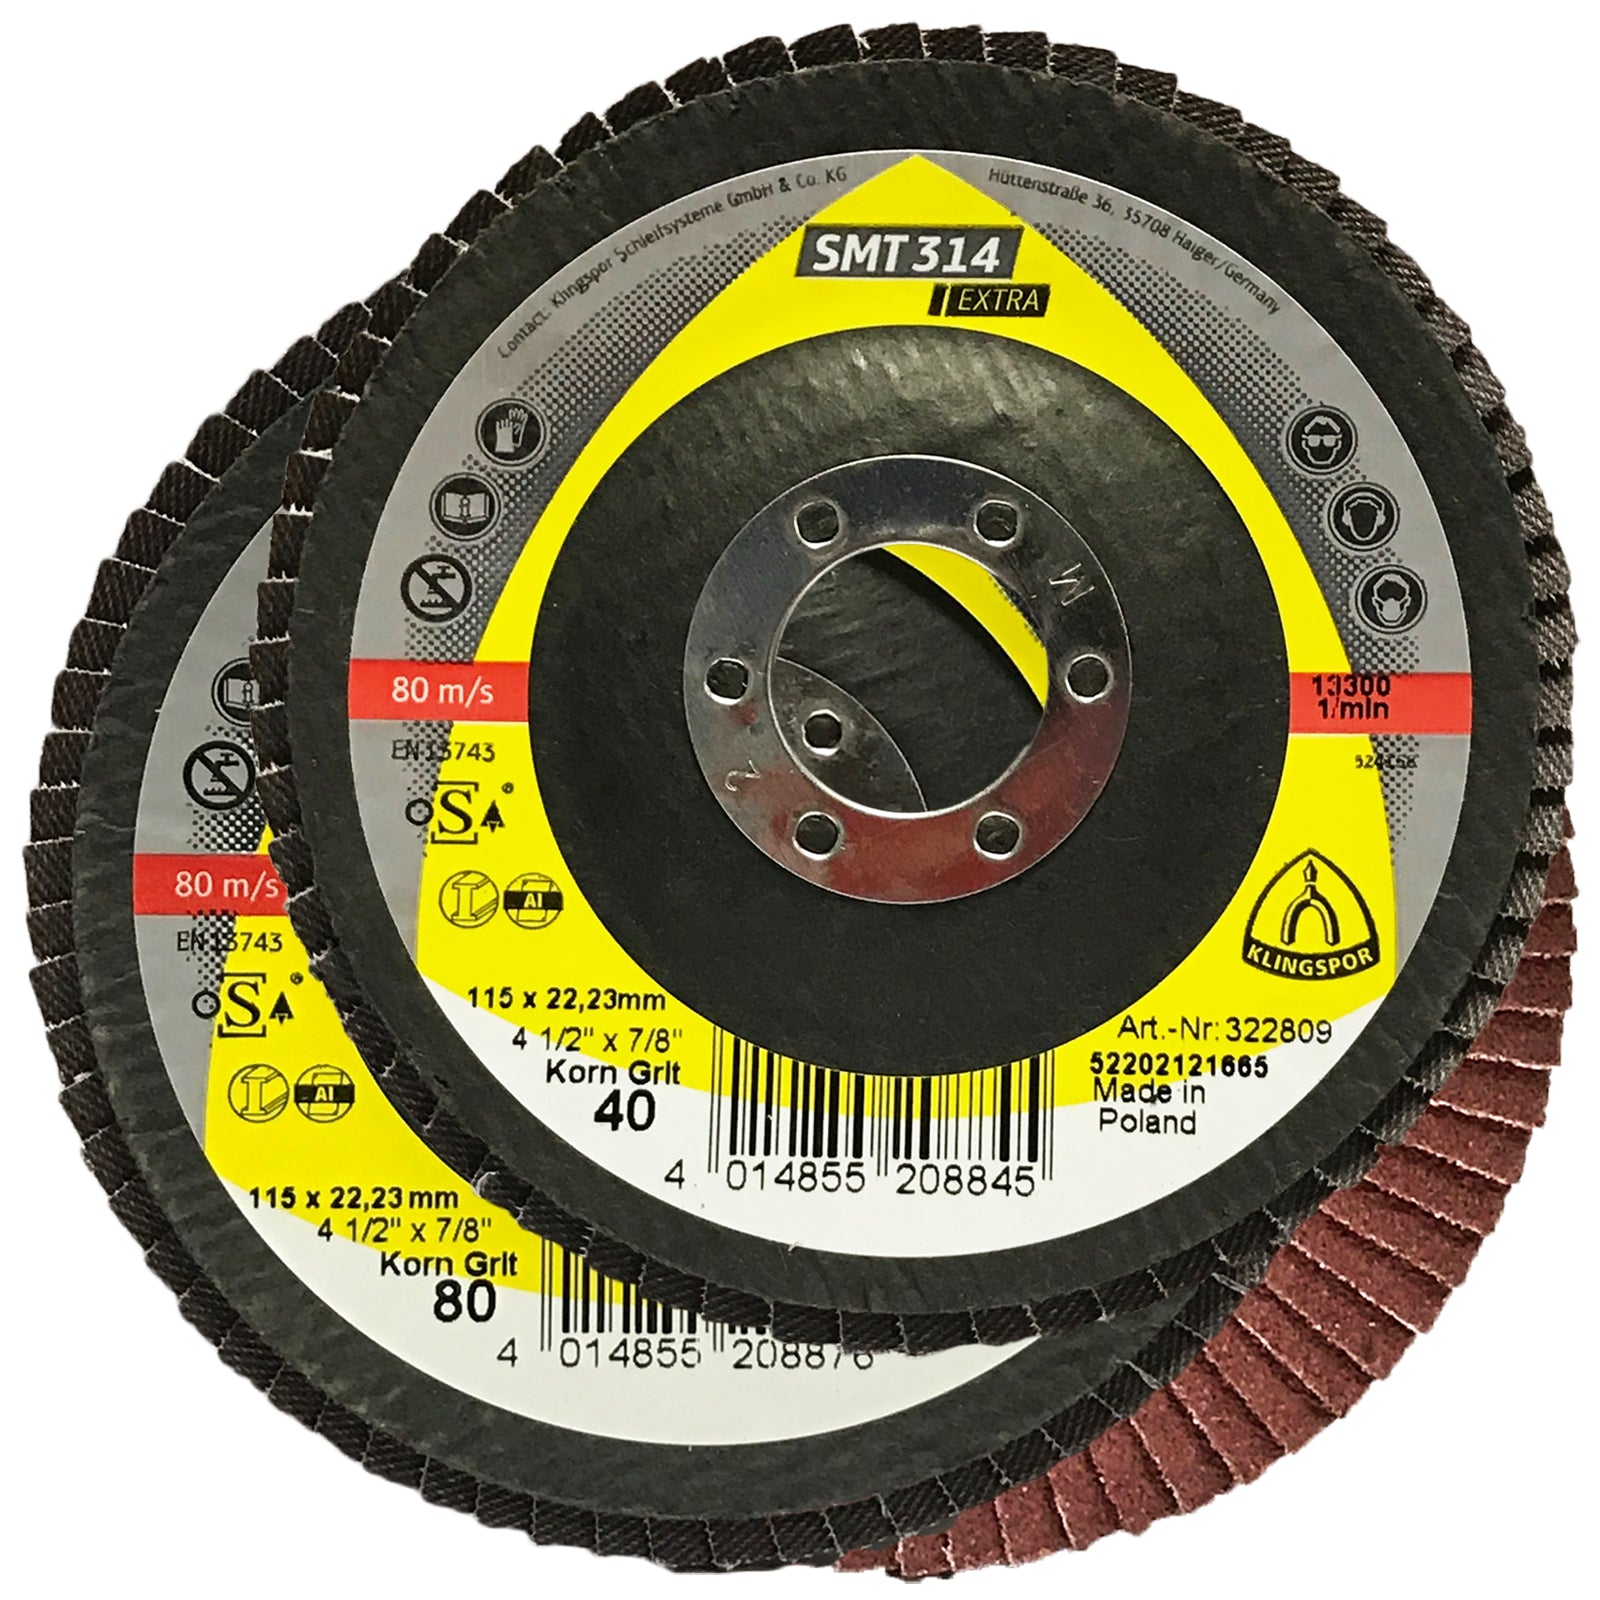 Klingspor SMT314 115mm Aluminium Oxide Flap Sanding Discs 40-120 Grit